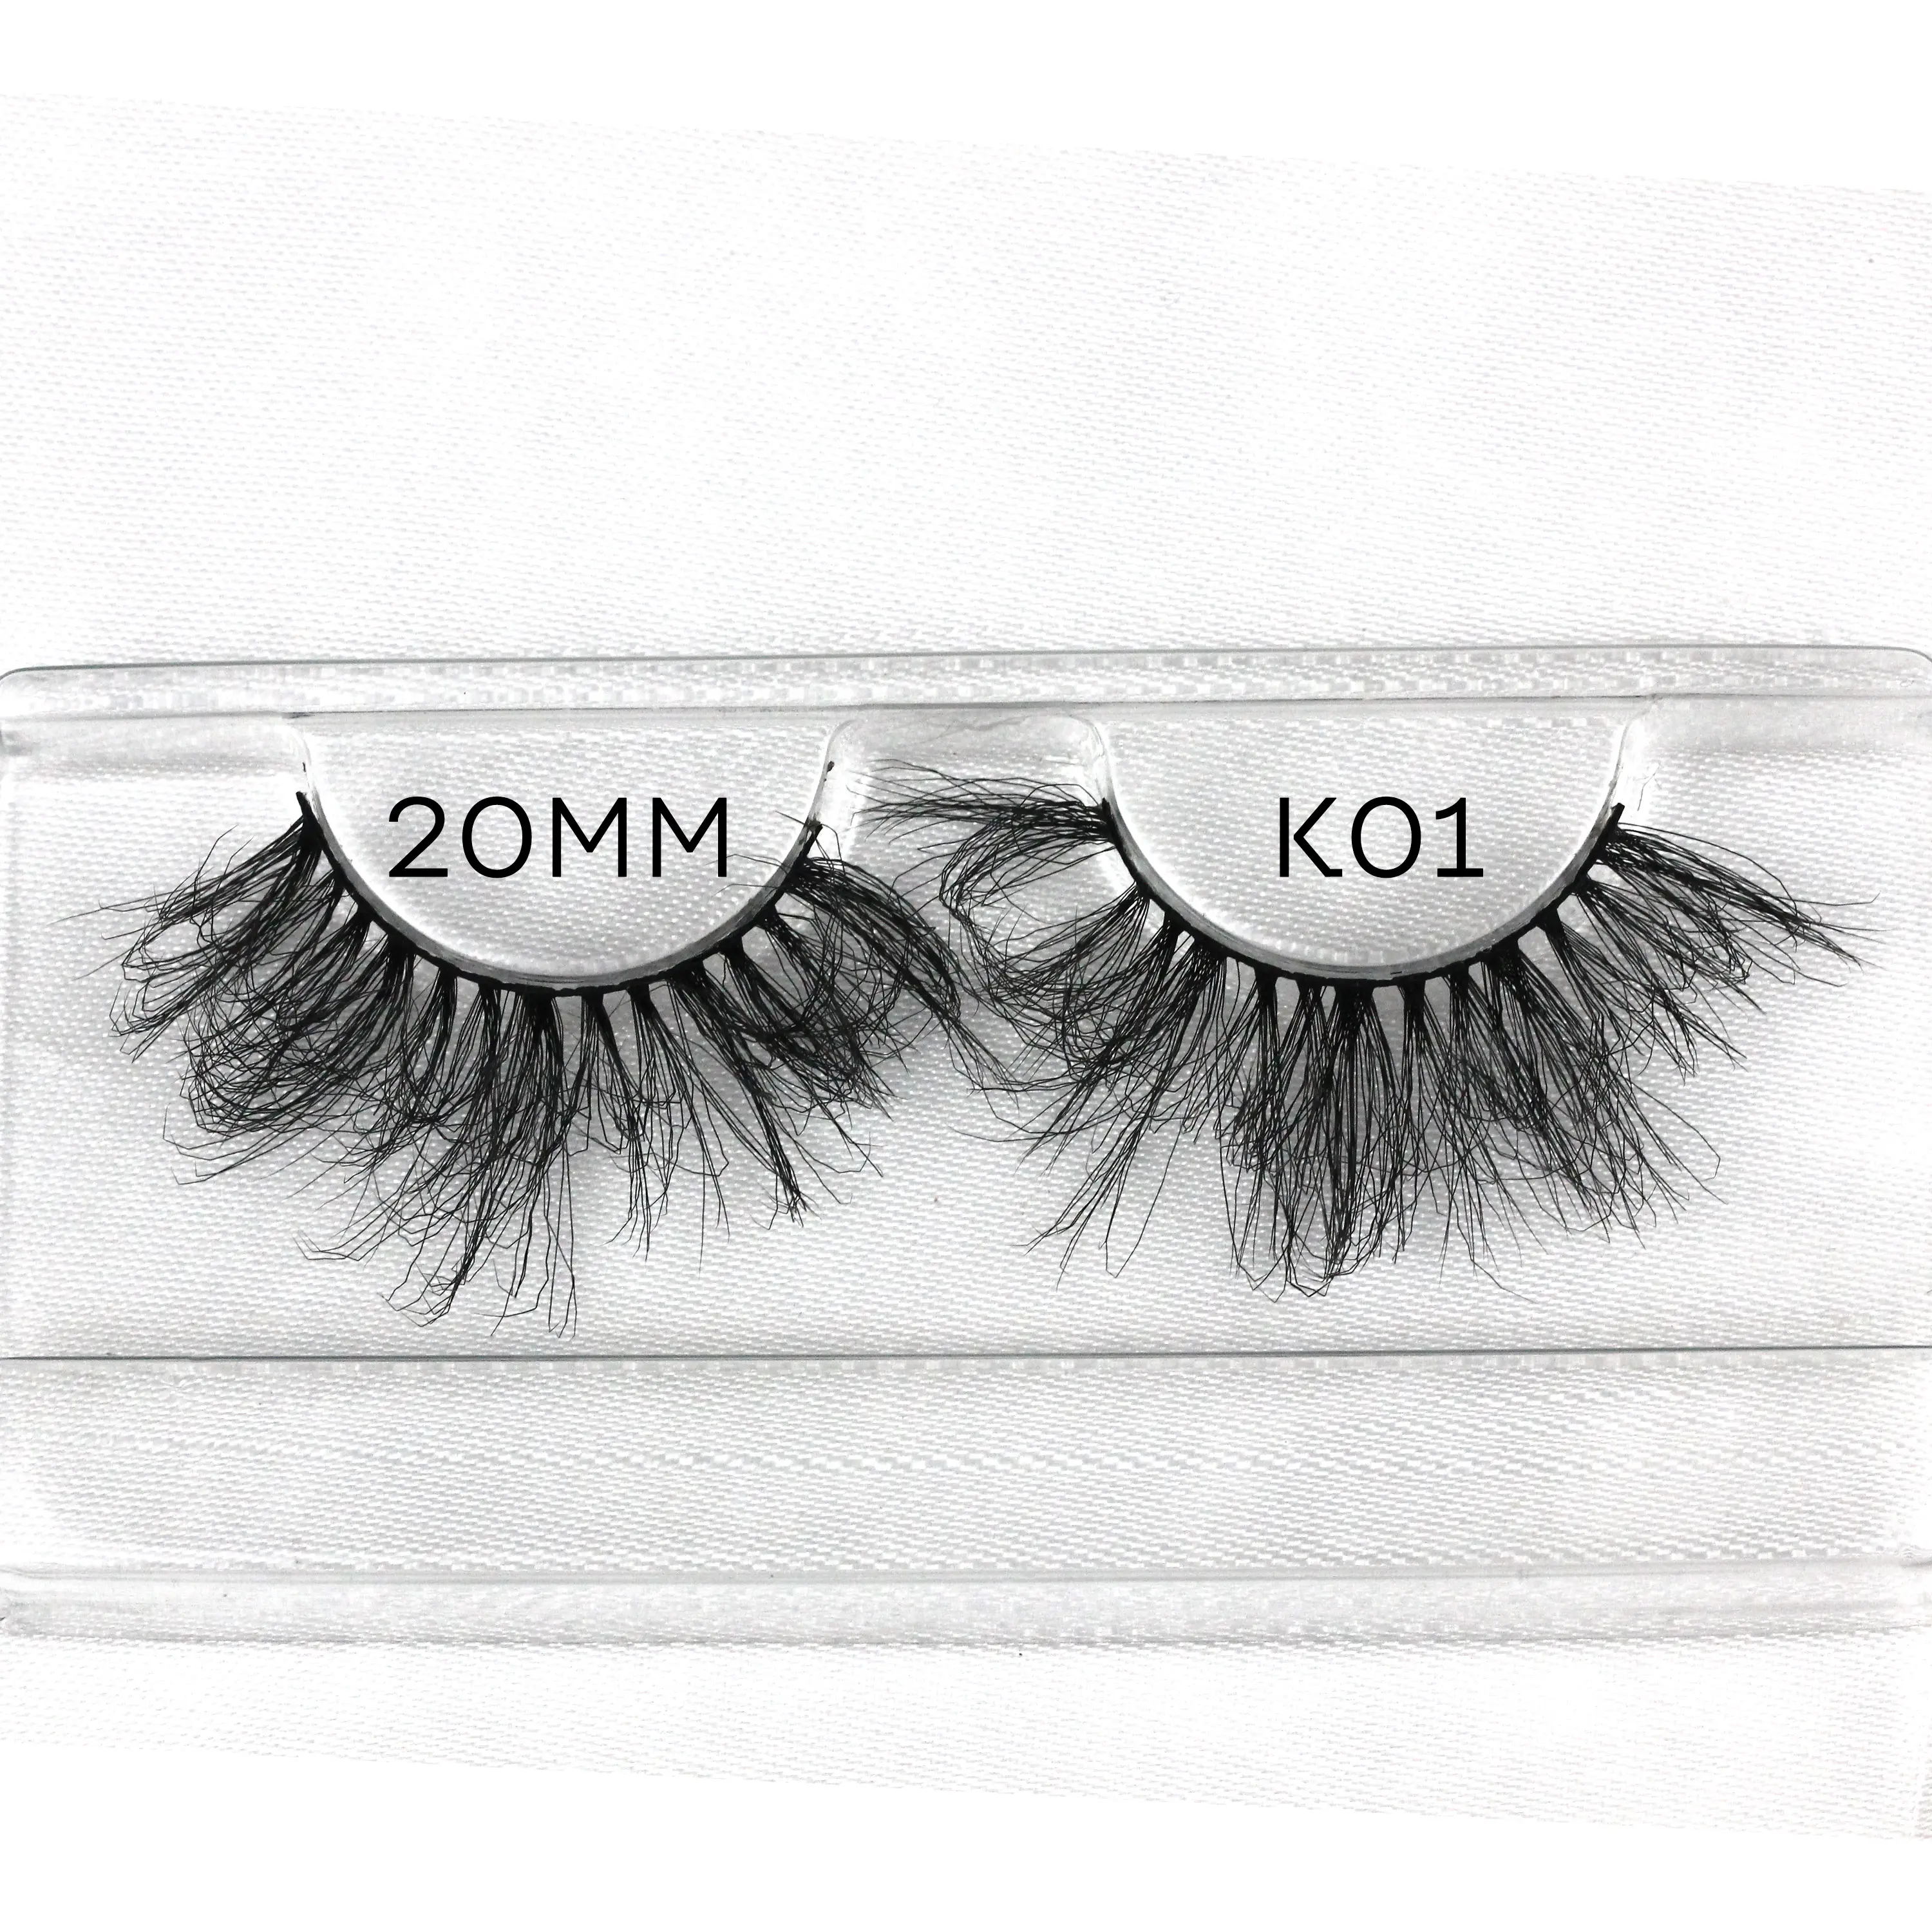 k01 Wholesale wispy slik lashes 3d mink eyelashes 10mm mink lashes Faux mink eyelash custom packaging box